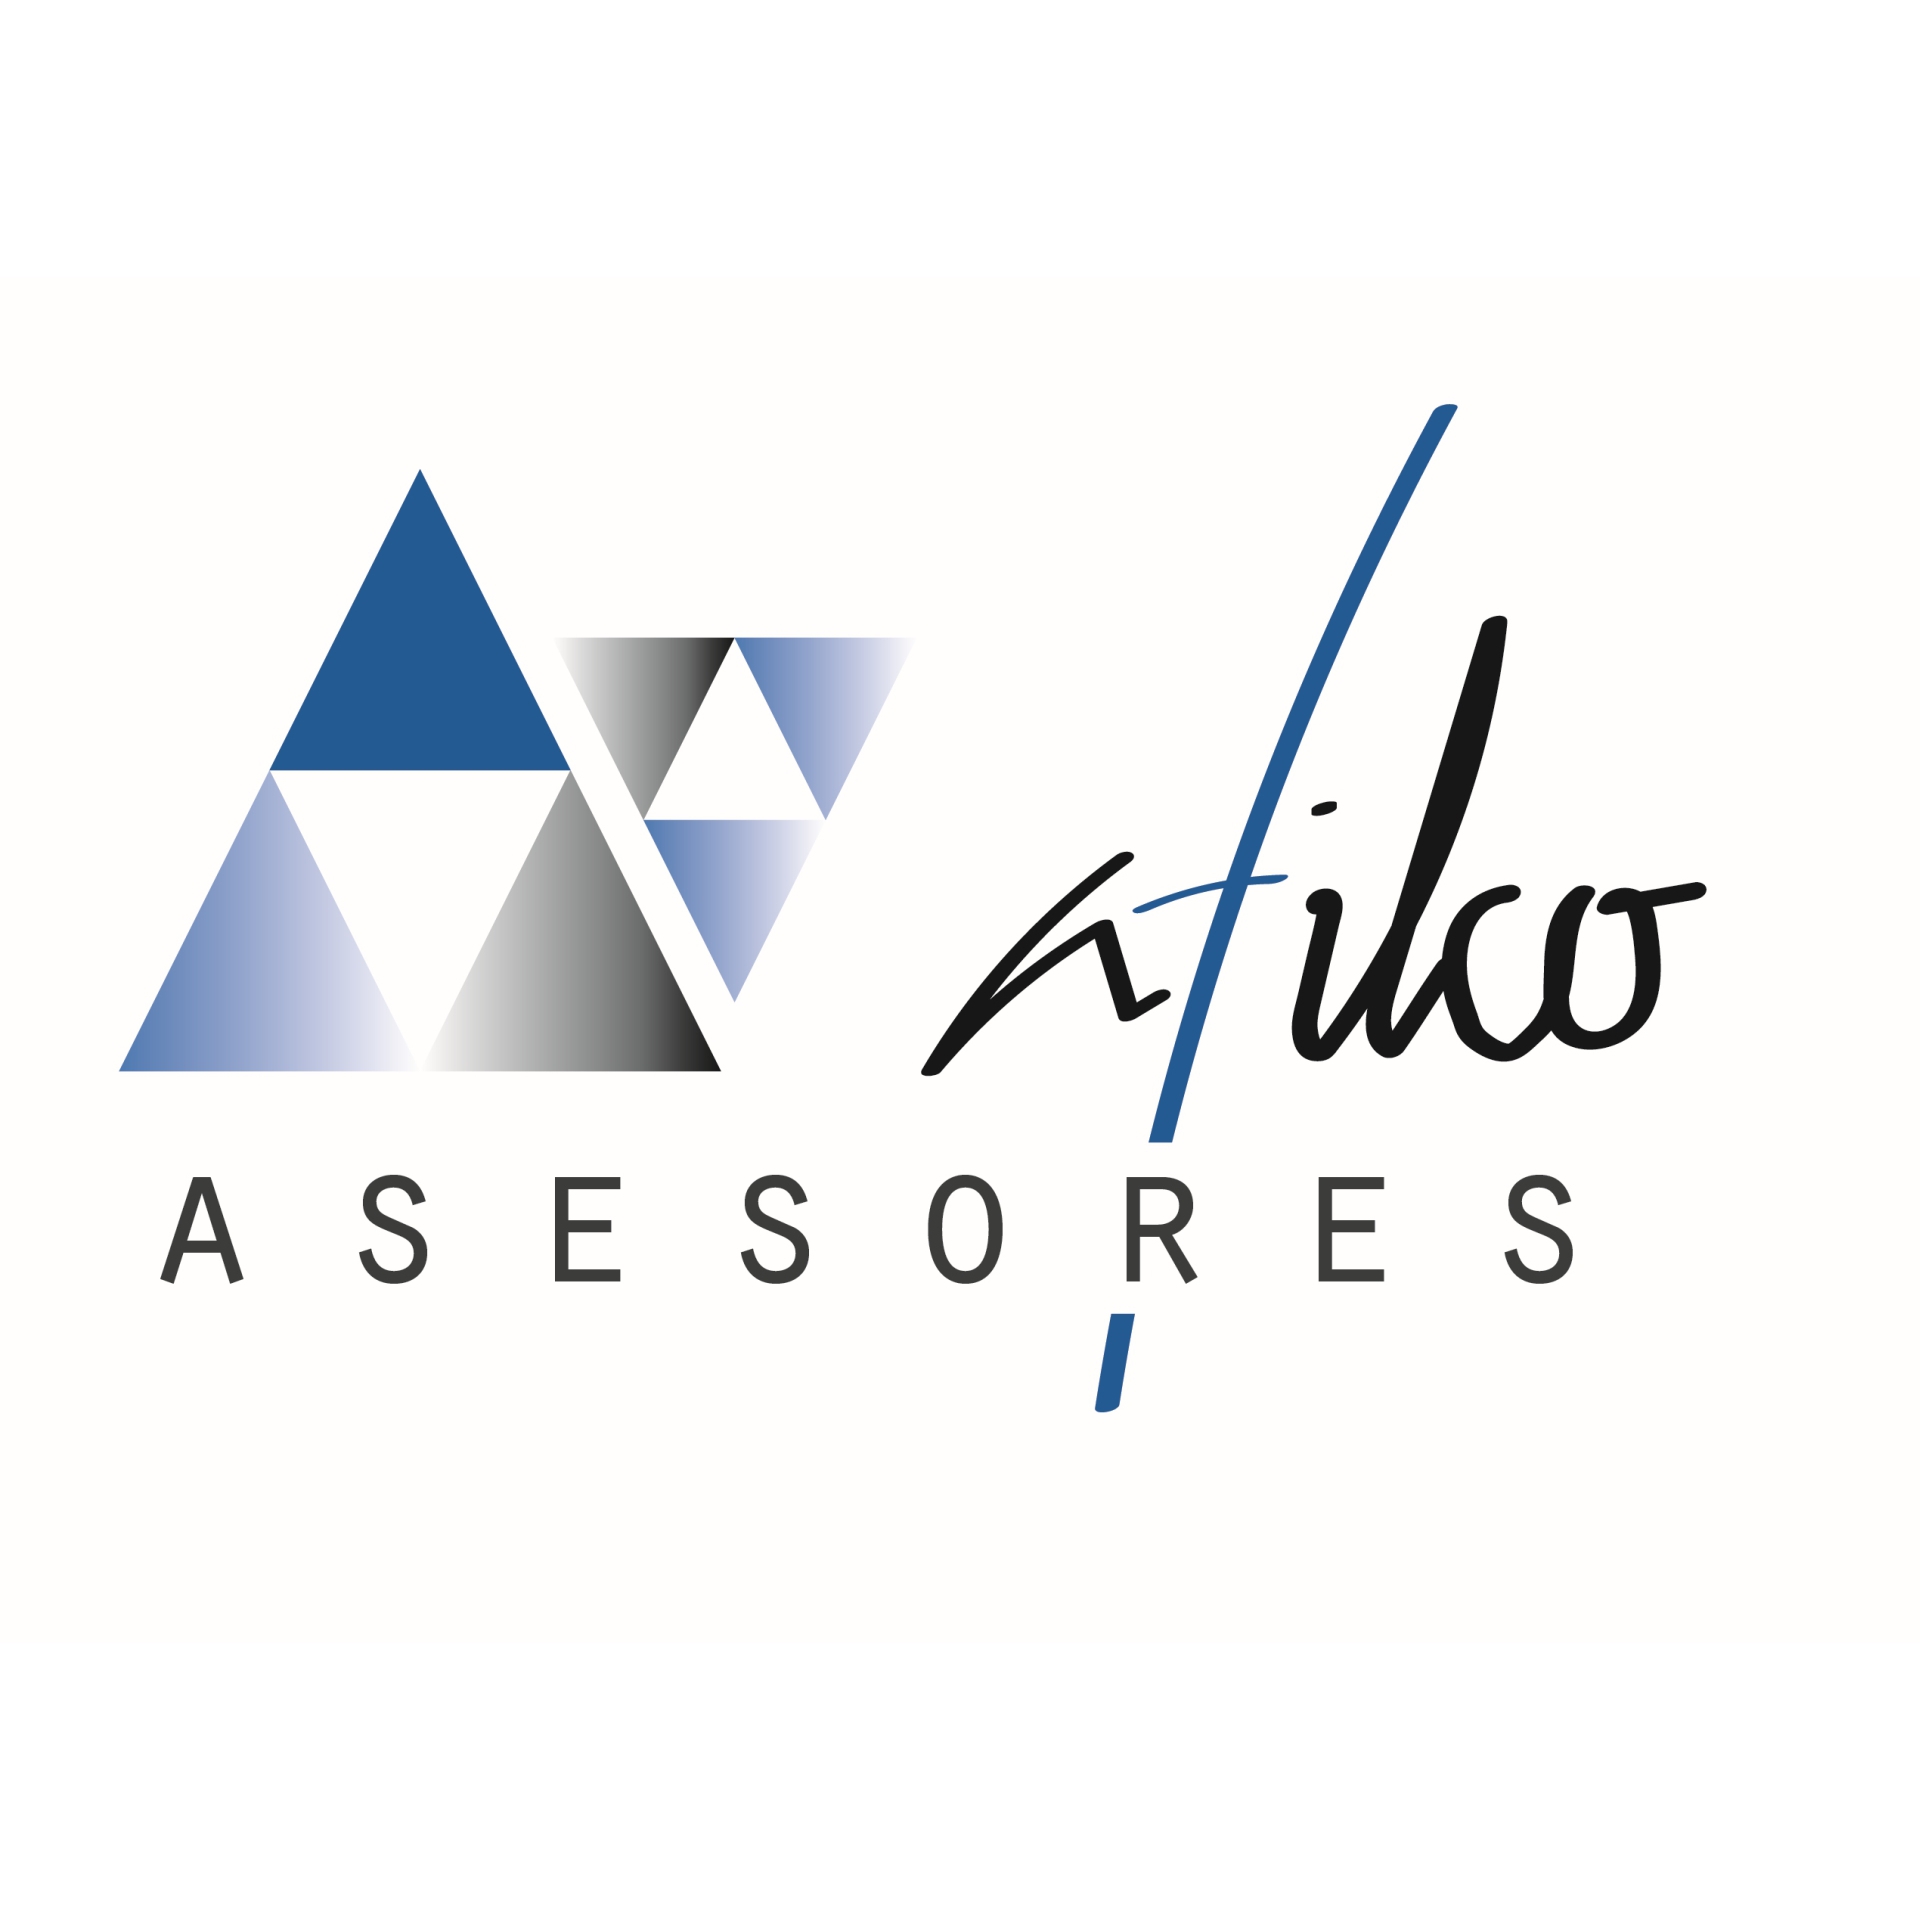 Asesoría Valencia Afilco Asesores Logo